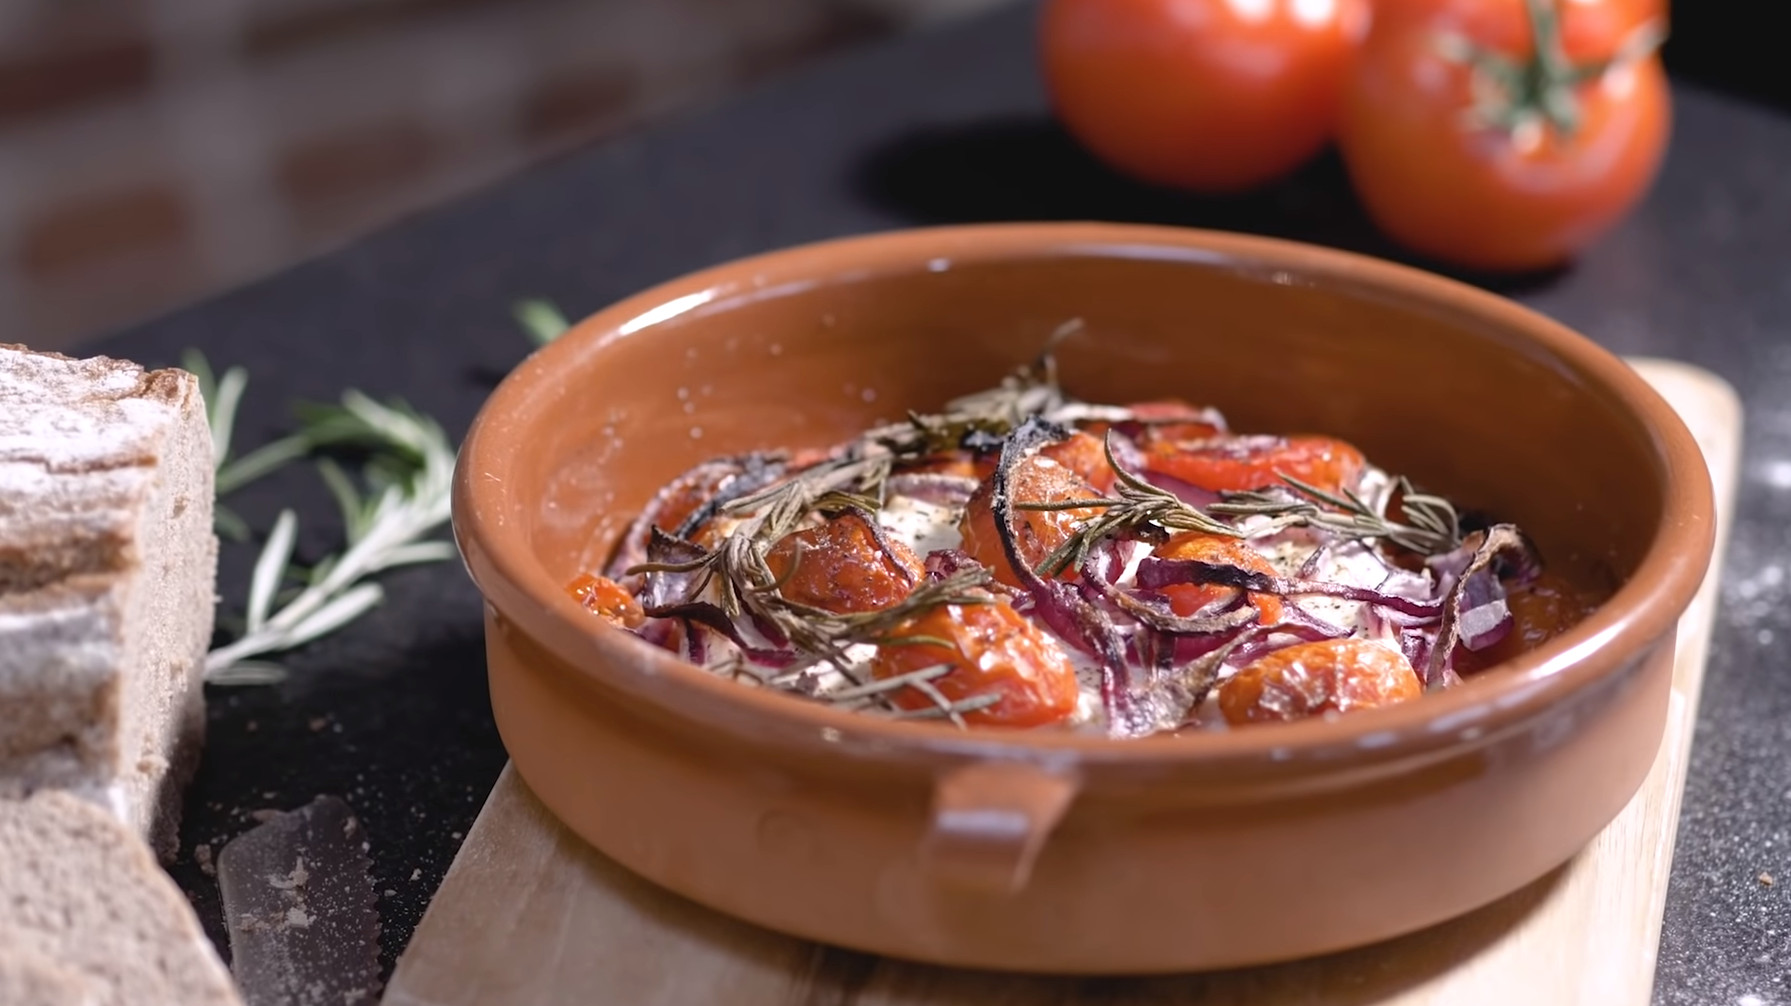 gebackener Feta mit Tomaten in Terracotta-Schale auf einem Holzbrett.